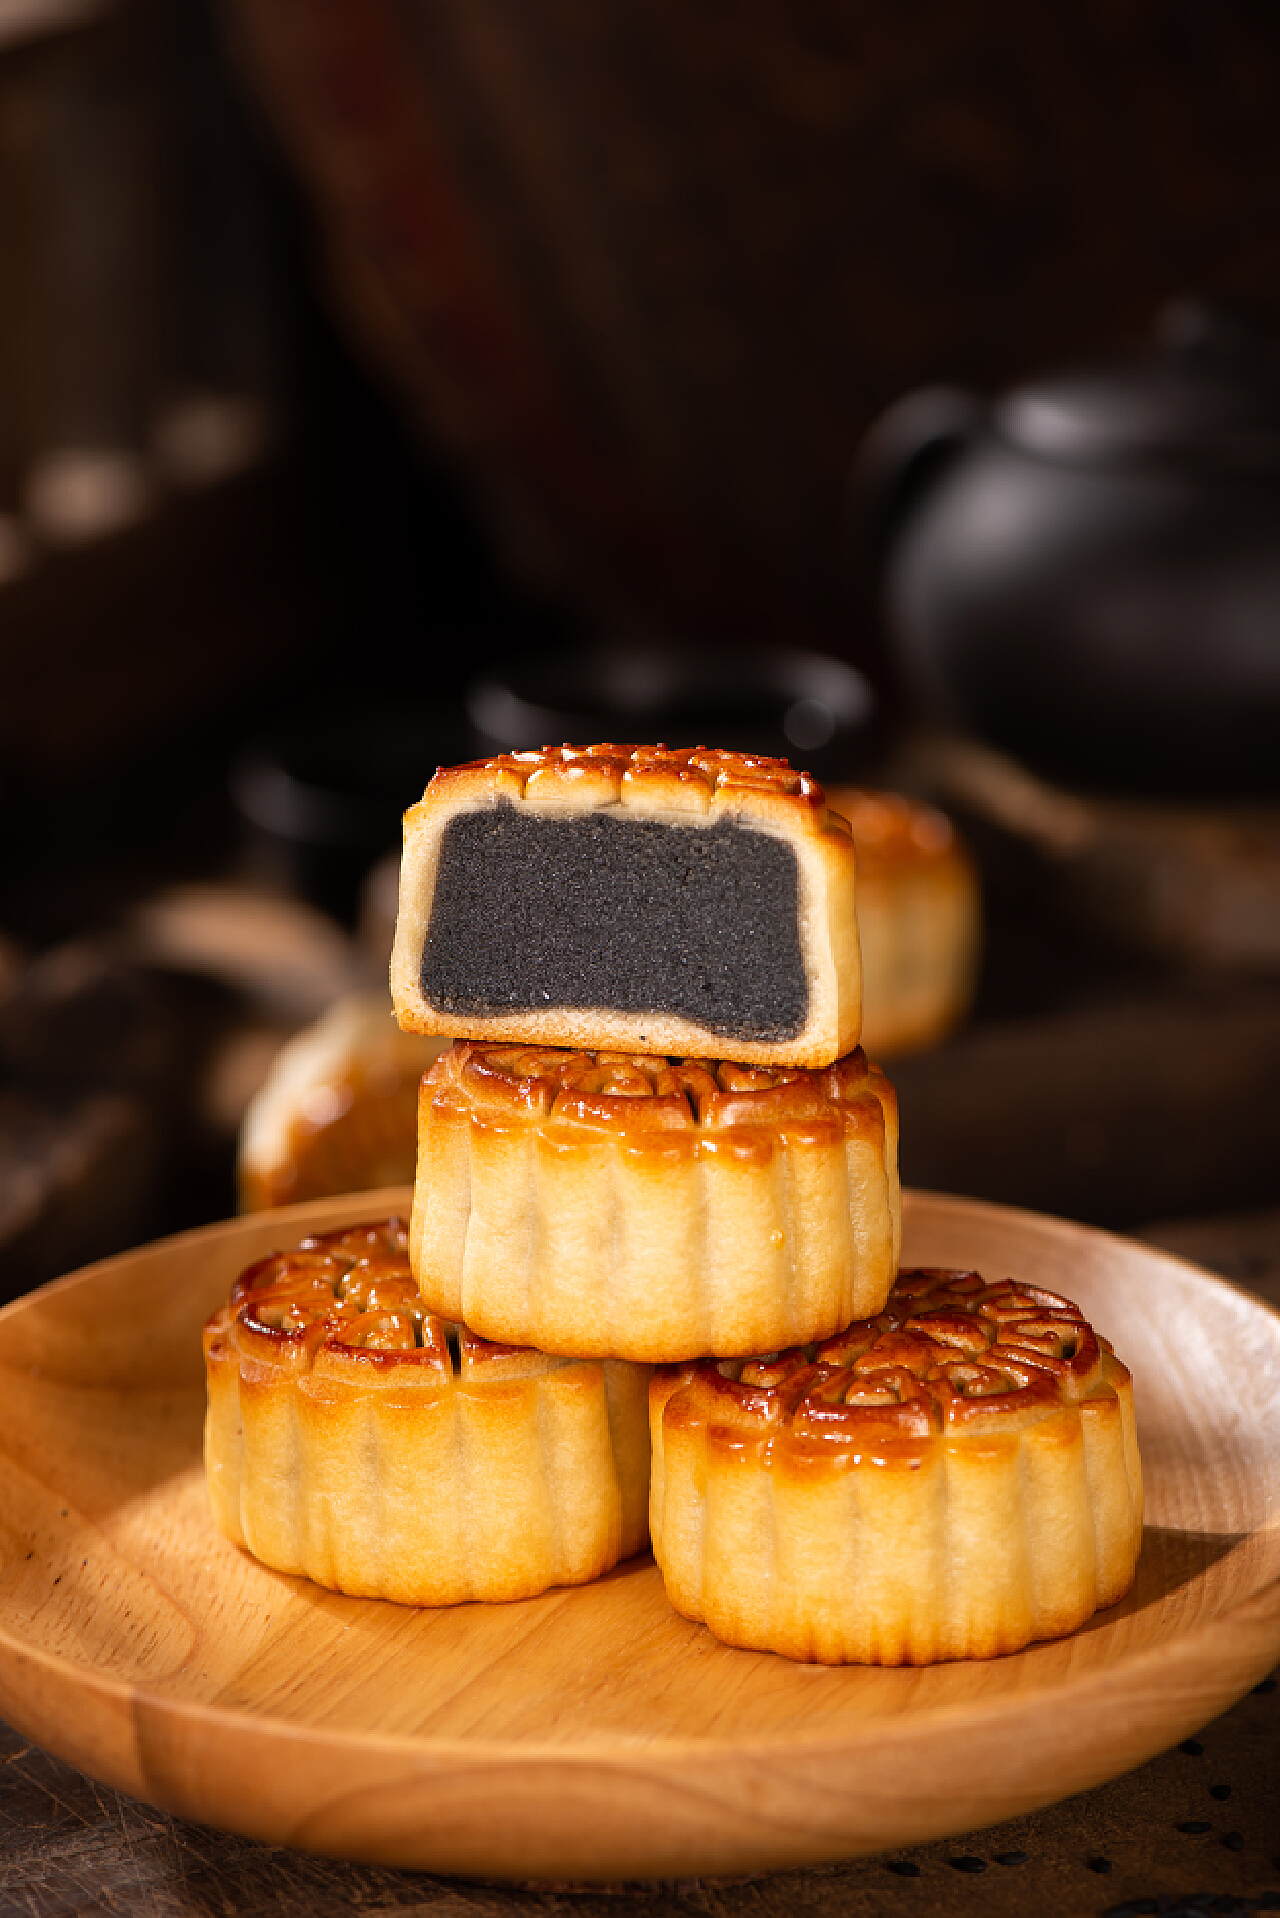 爱厨房的幸福之味: 黑芝麻月饼 Black Sesame Moon Cake